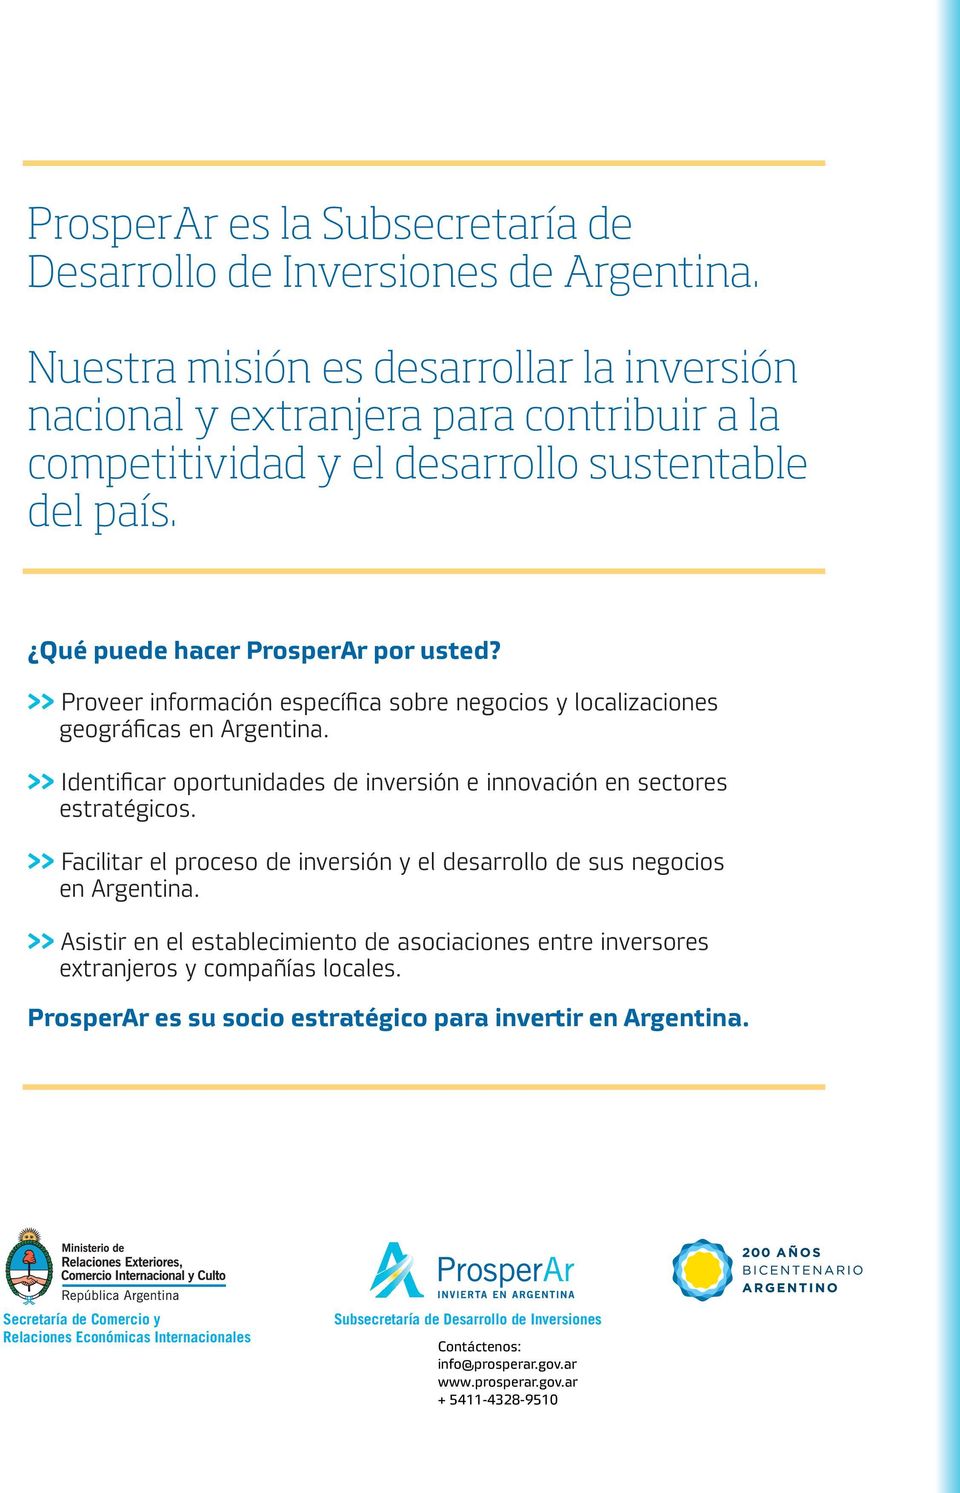 >> Proveer información específica sobre negocios y localizaciones geográficas en Argentina. >> Identificar oportunidades de inversión e innovación en sectores estratégicos.